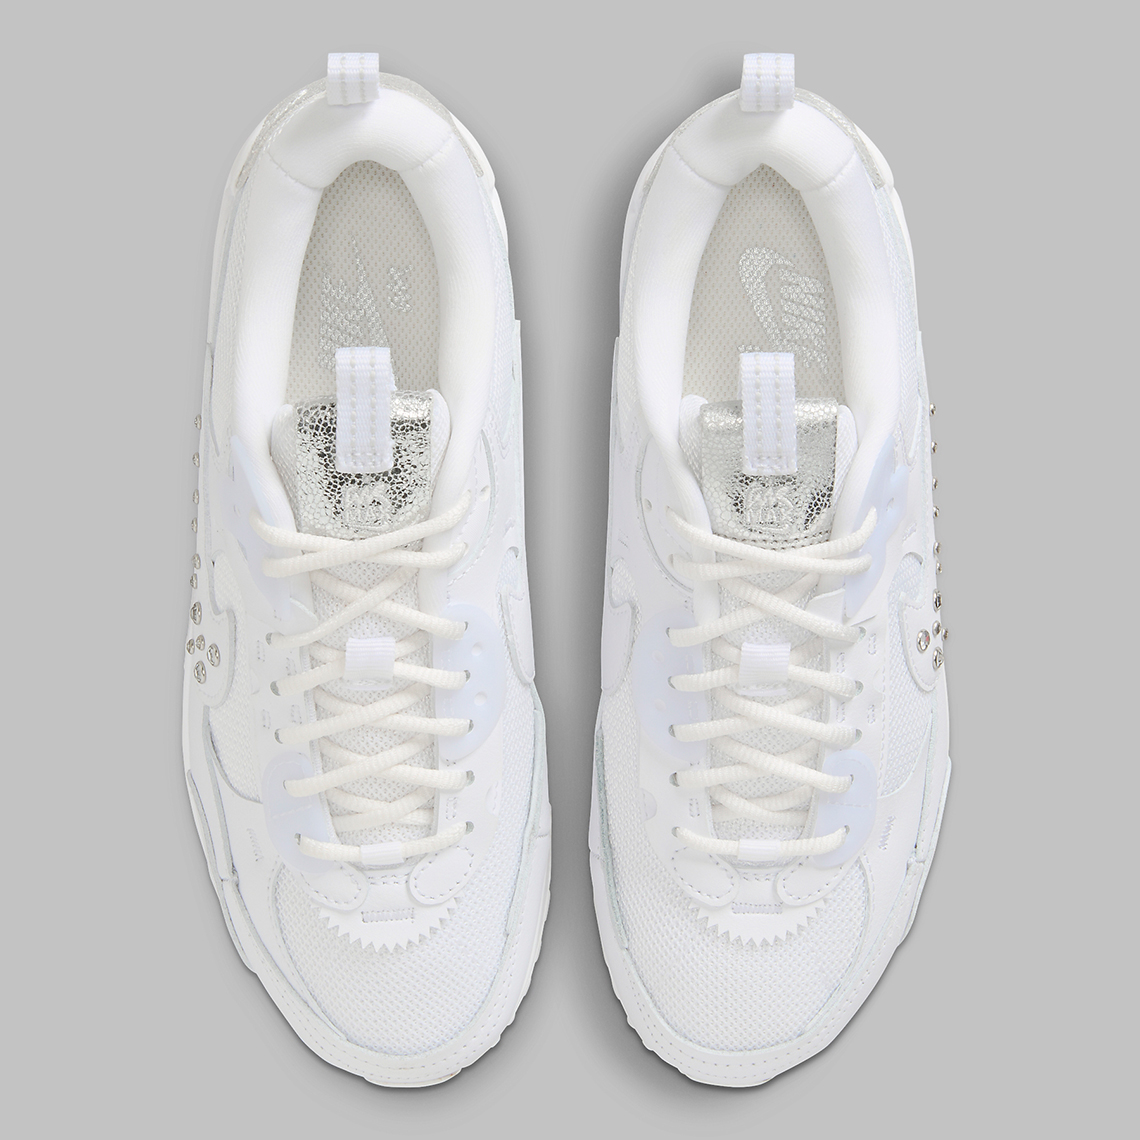 Nike Air Max 90 Futura White Metallic Silver Fq8888 100 1